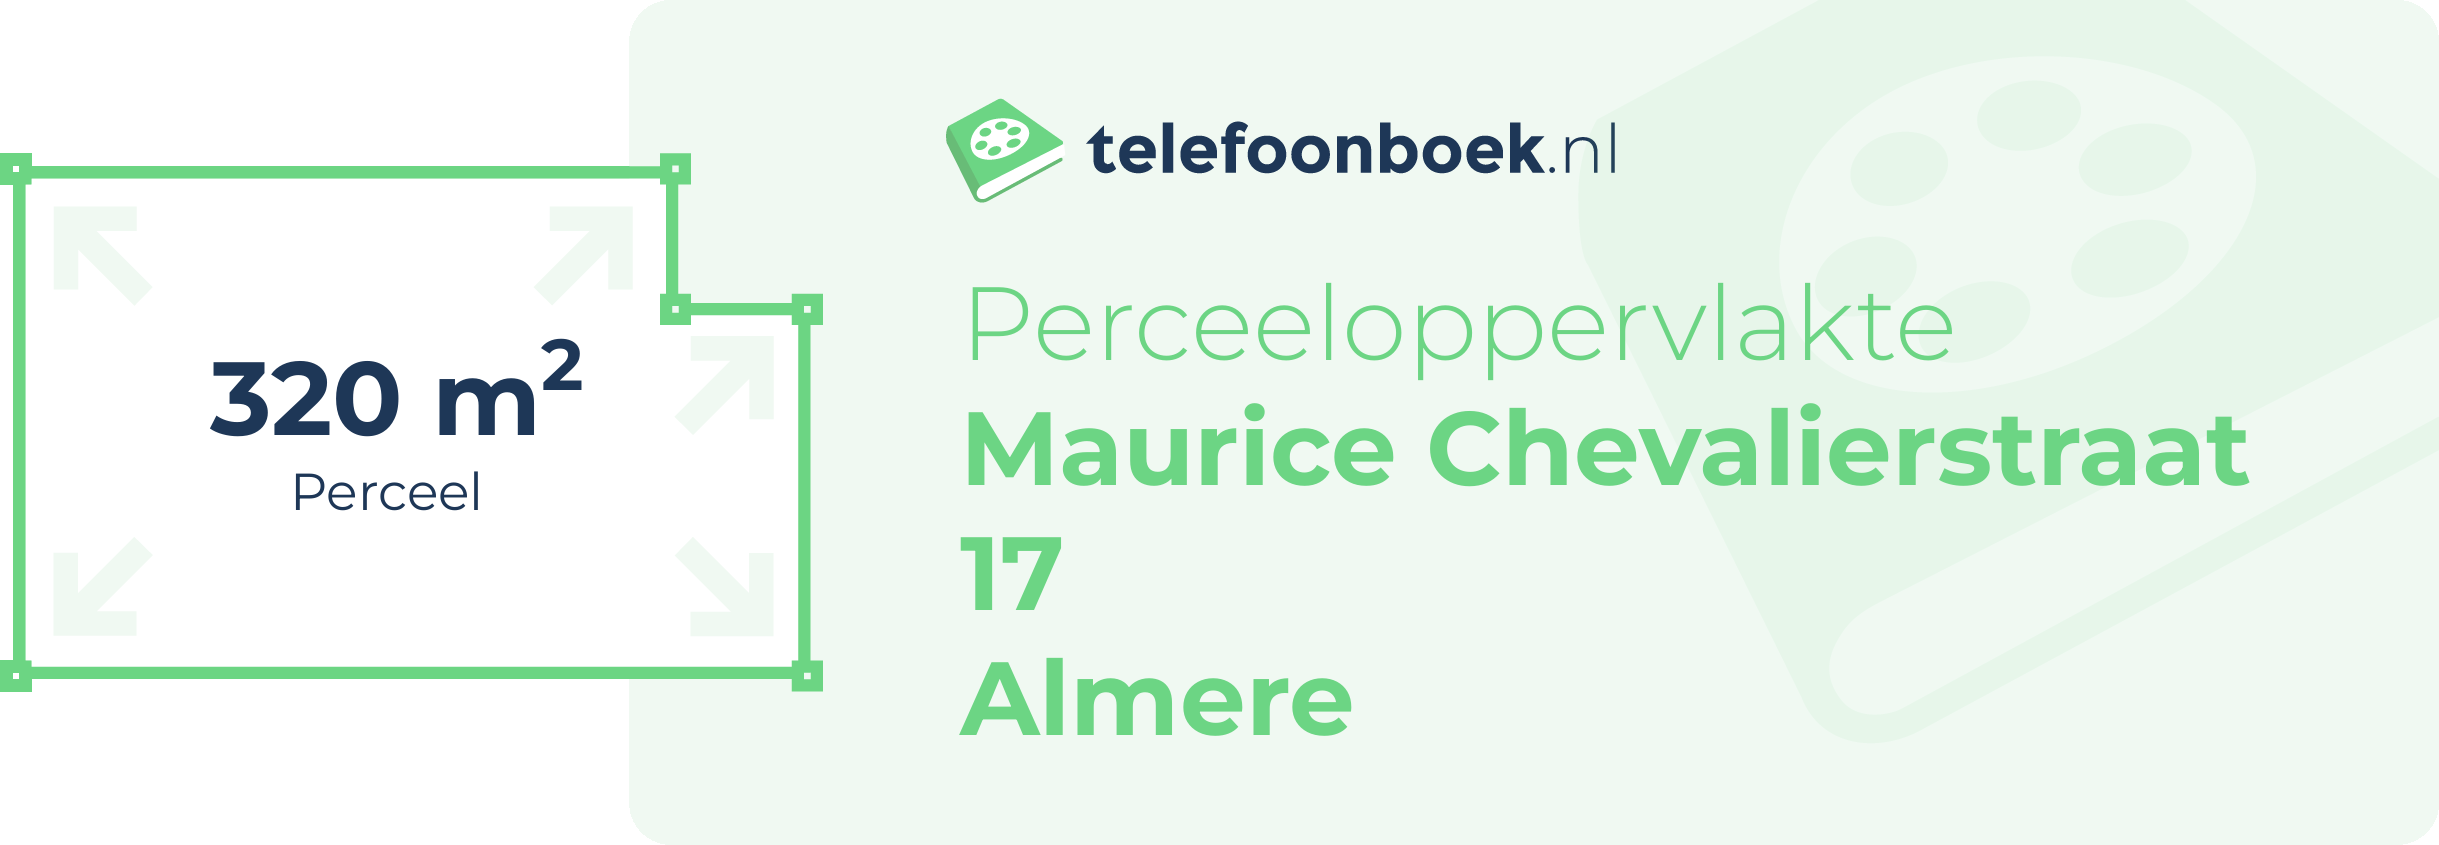 Perceeloppervlakte Maurice Chevalierstraat 17 Almere